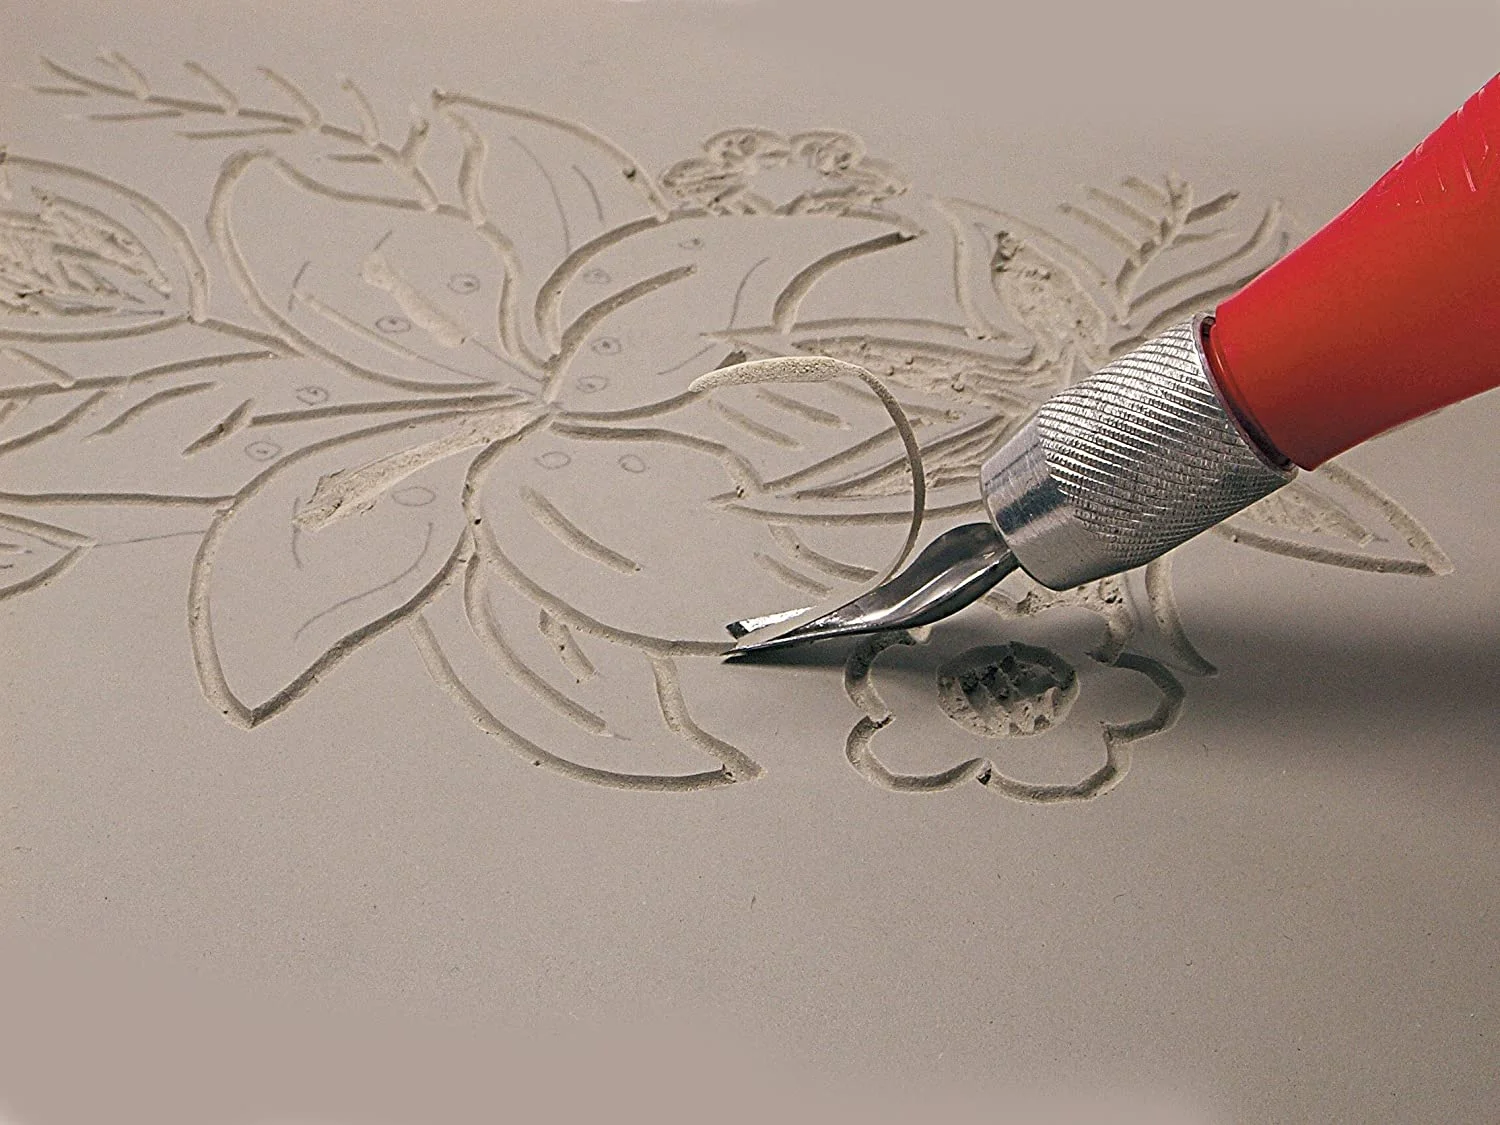 lino cutting & printing kit,stamp carving